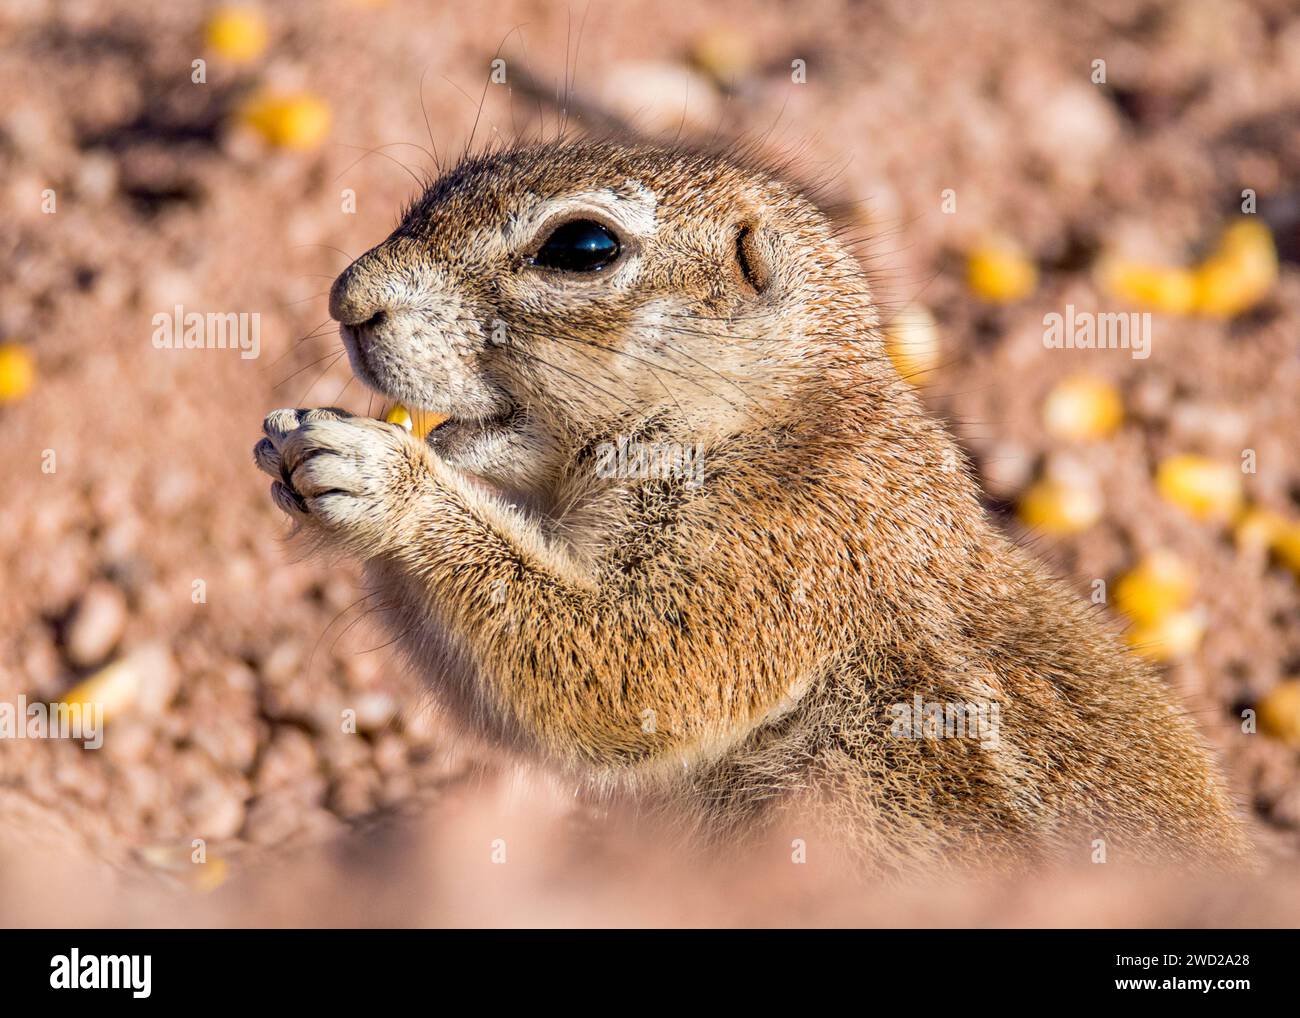 Bodenhörnchen Namibisches Nagetier Stockfoto